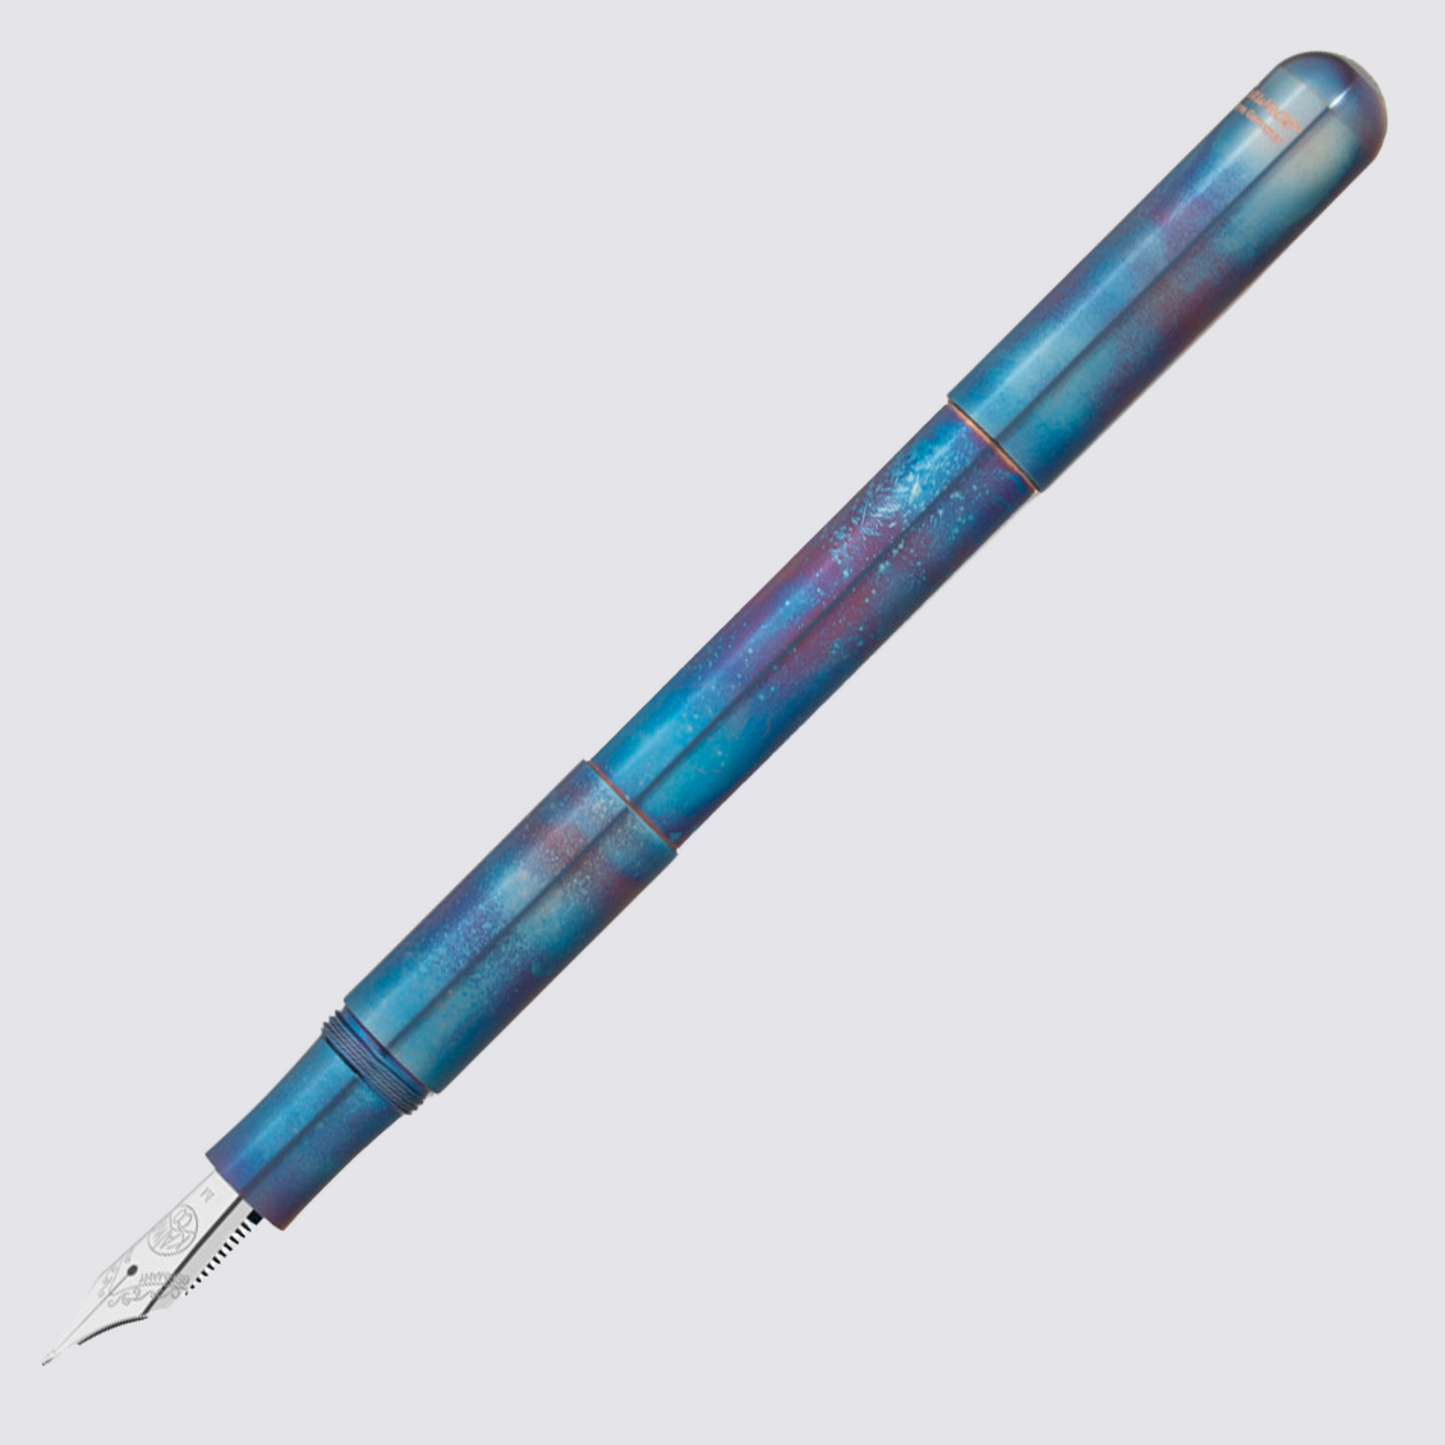 Supra Fountain Pen in Fireblue